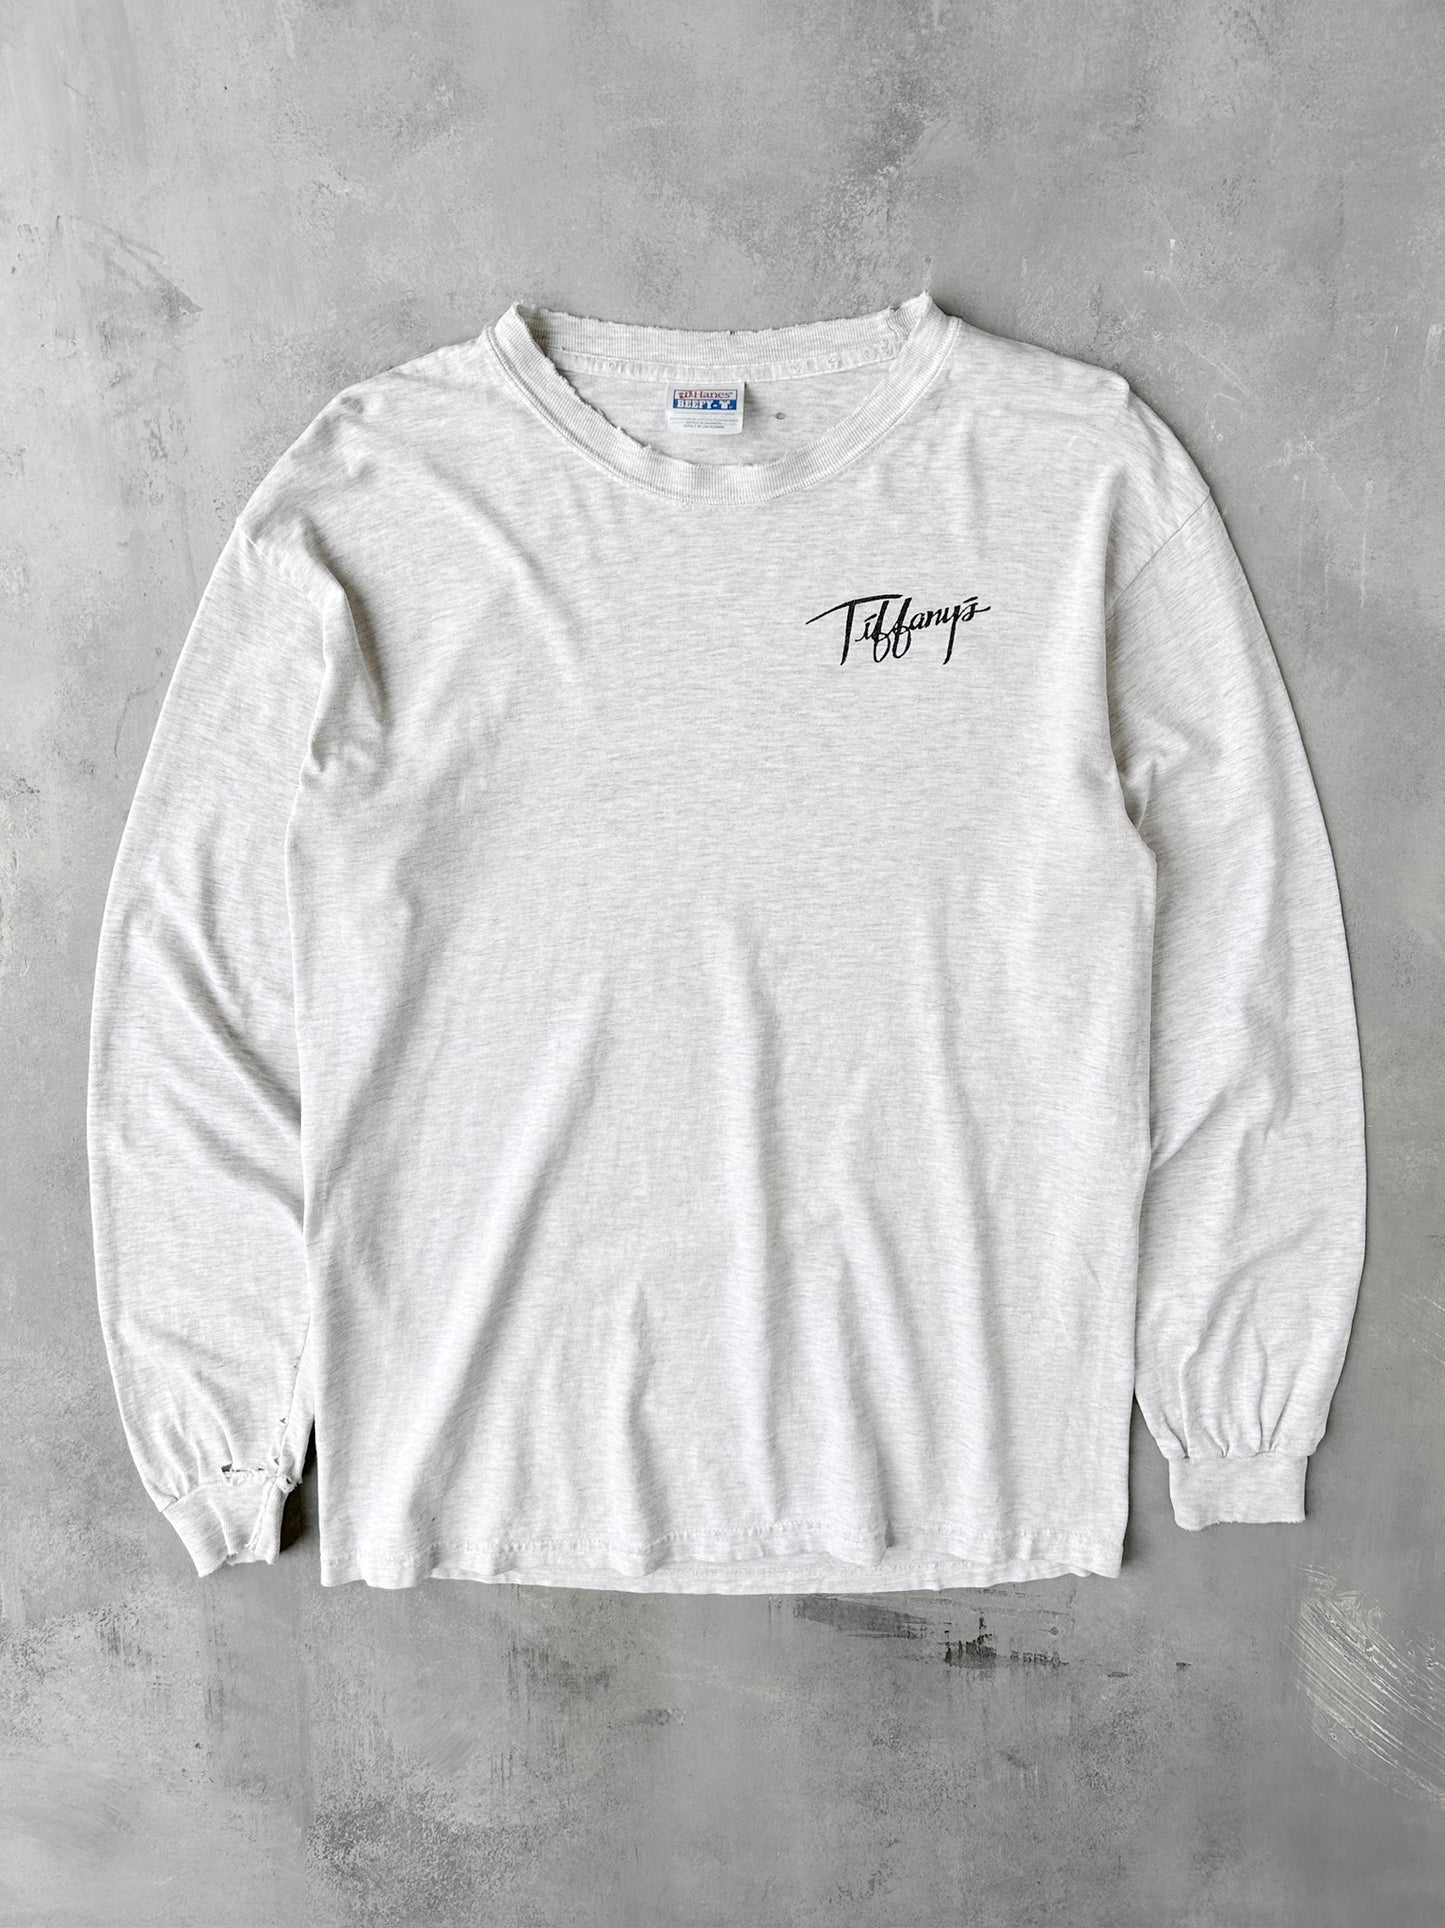 Tiffany's T-Shirt 00's - Medium